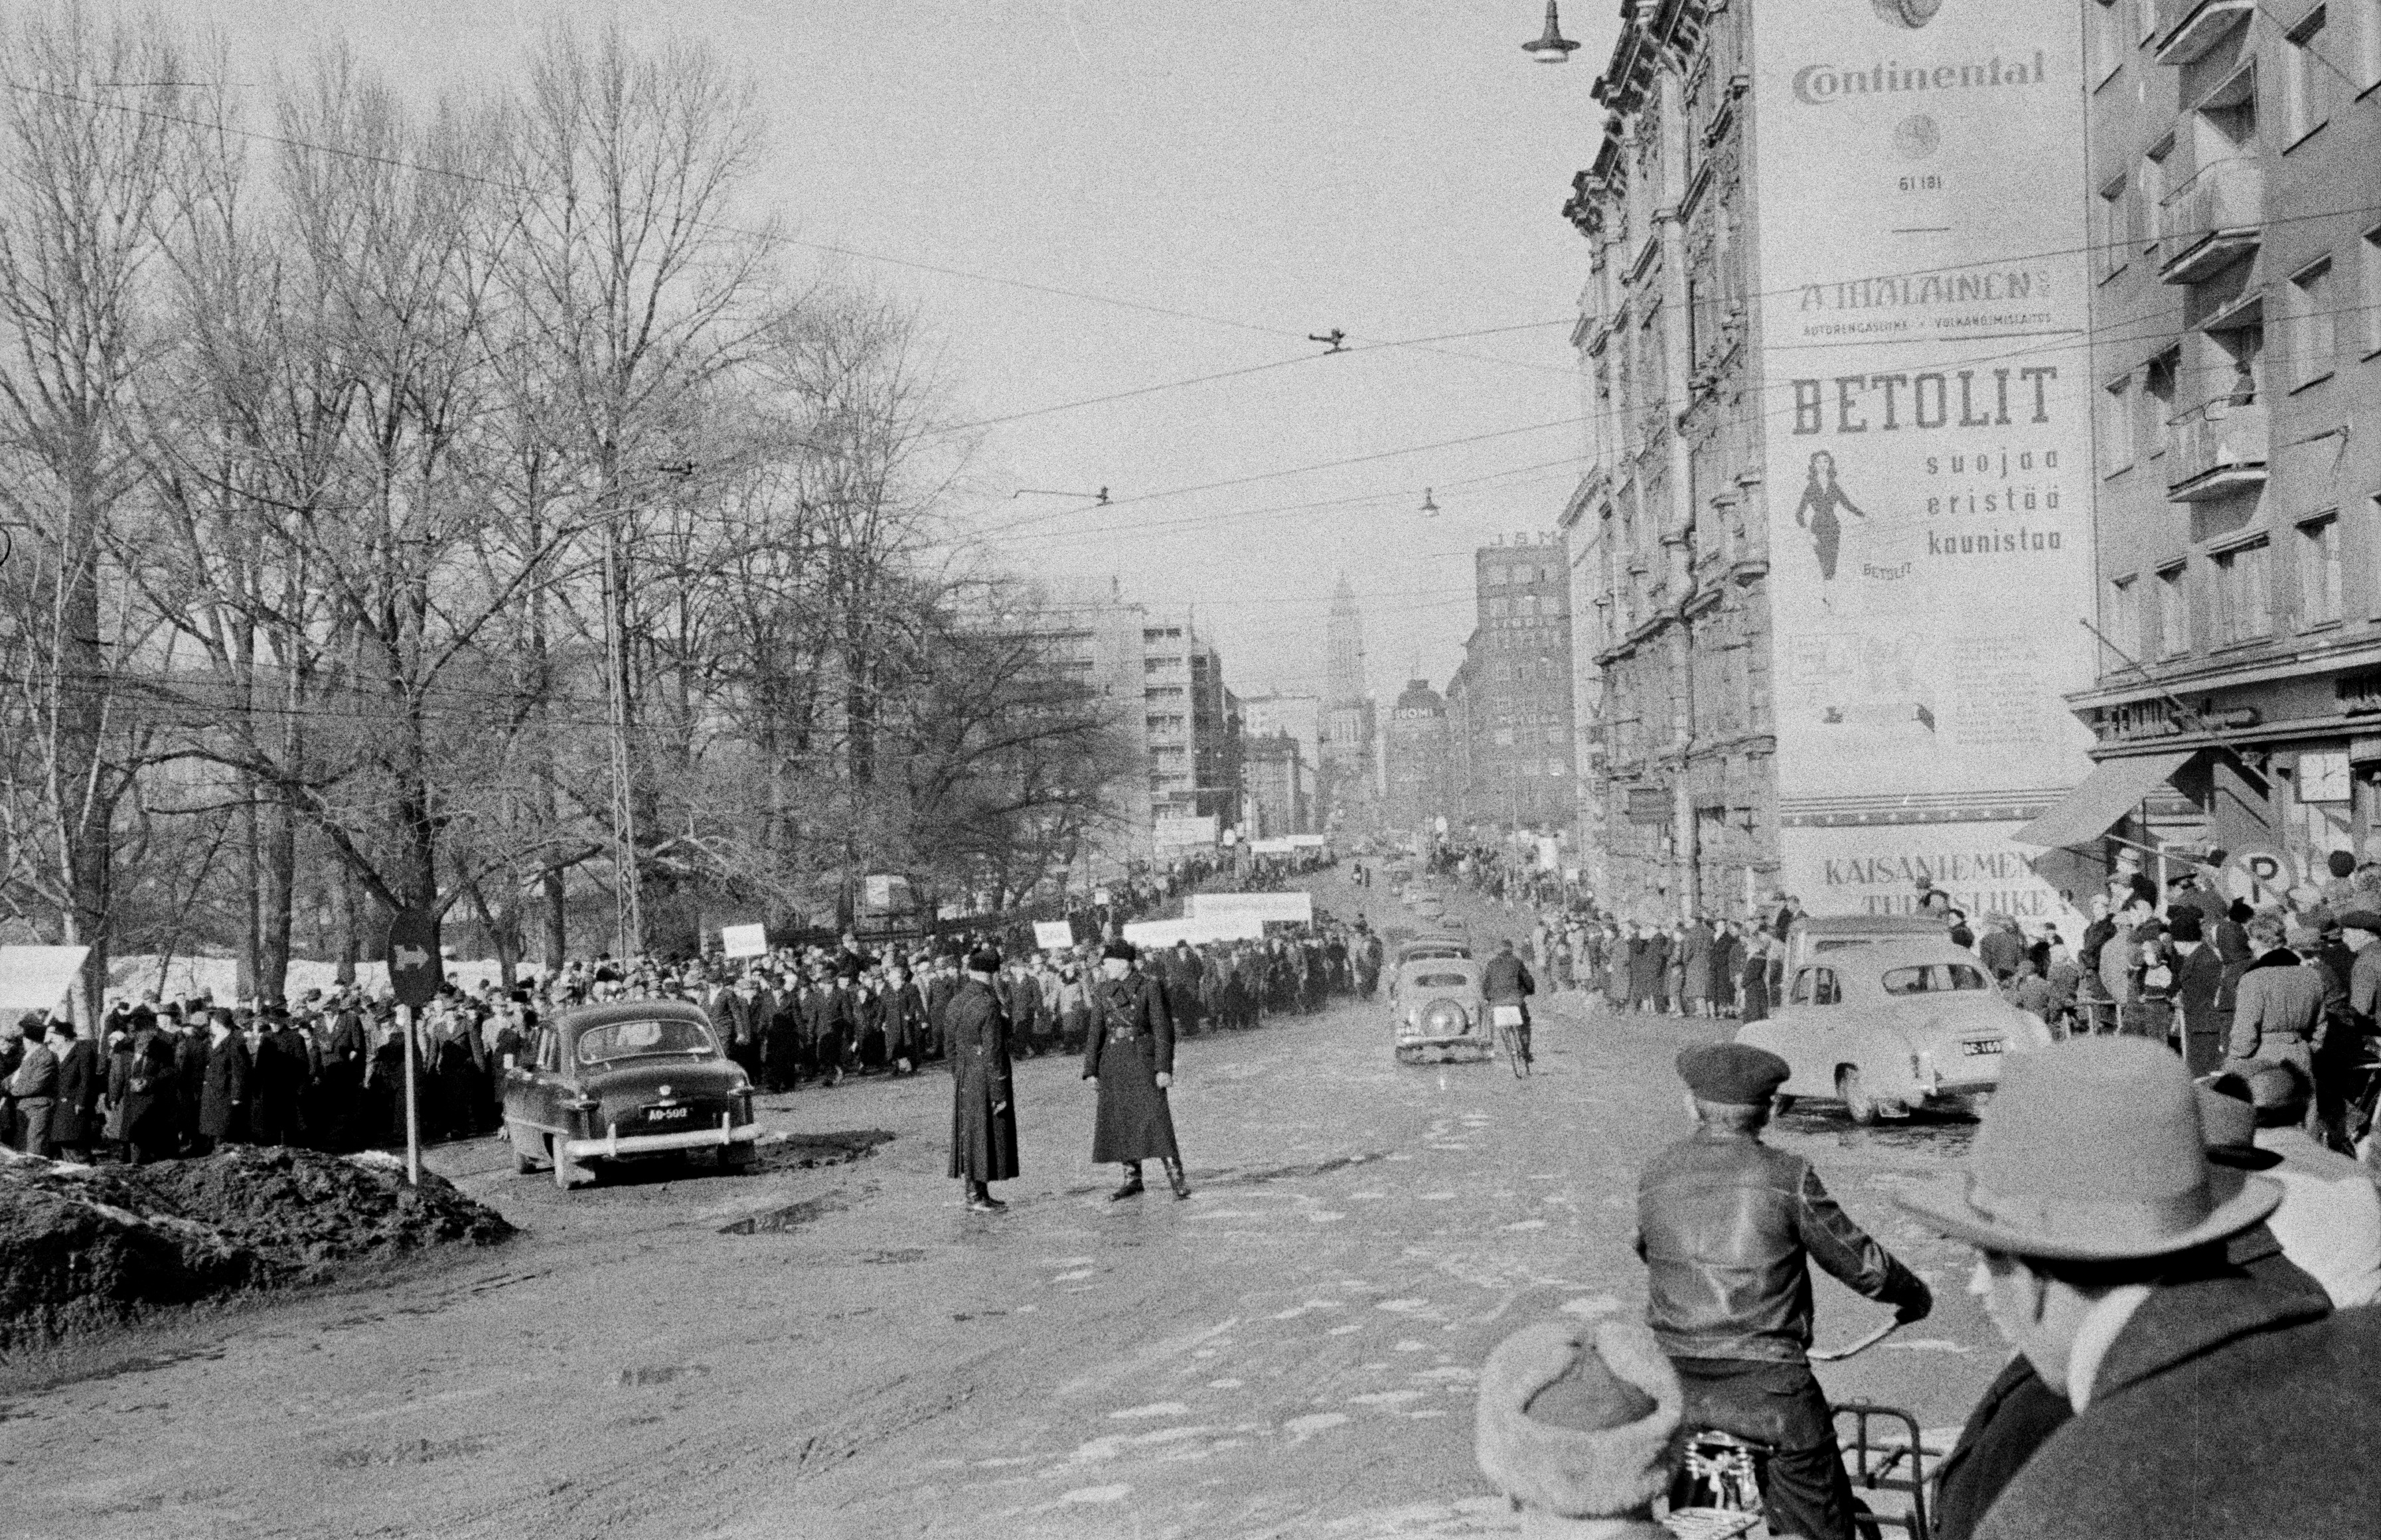 Mielenosoituskulkue yleislakon aikana Unioninkatu 44:n ja 39-45:n kohdalla. Vasemmalla pysäköitynä Ford Custom (vm. 1951) -henkilöauto.